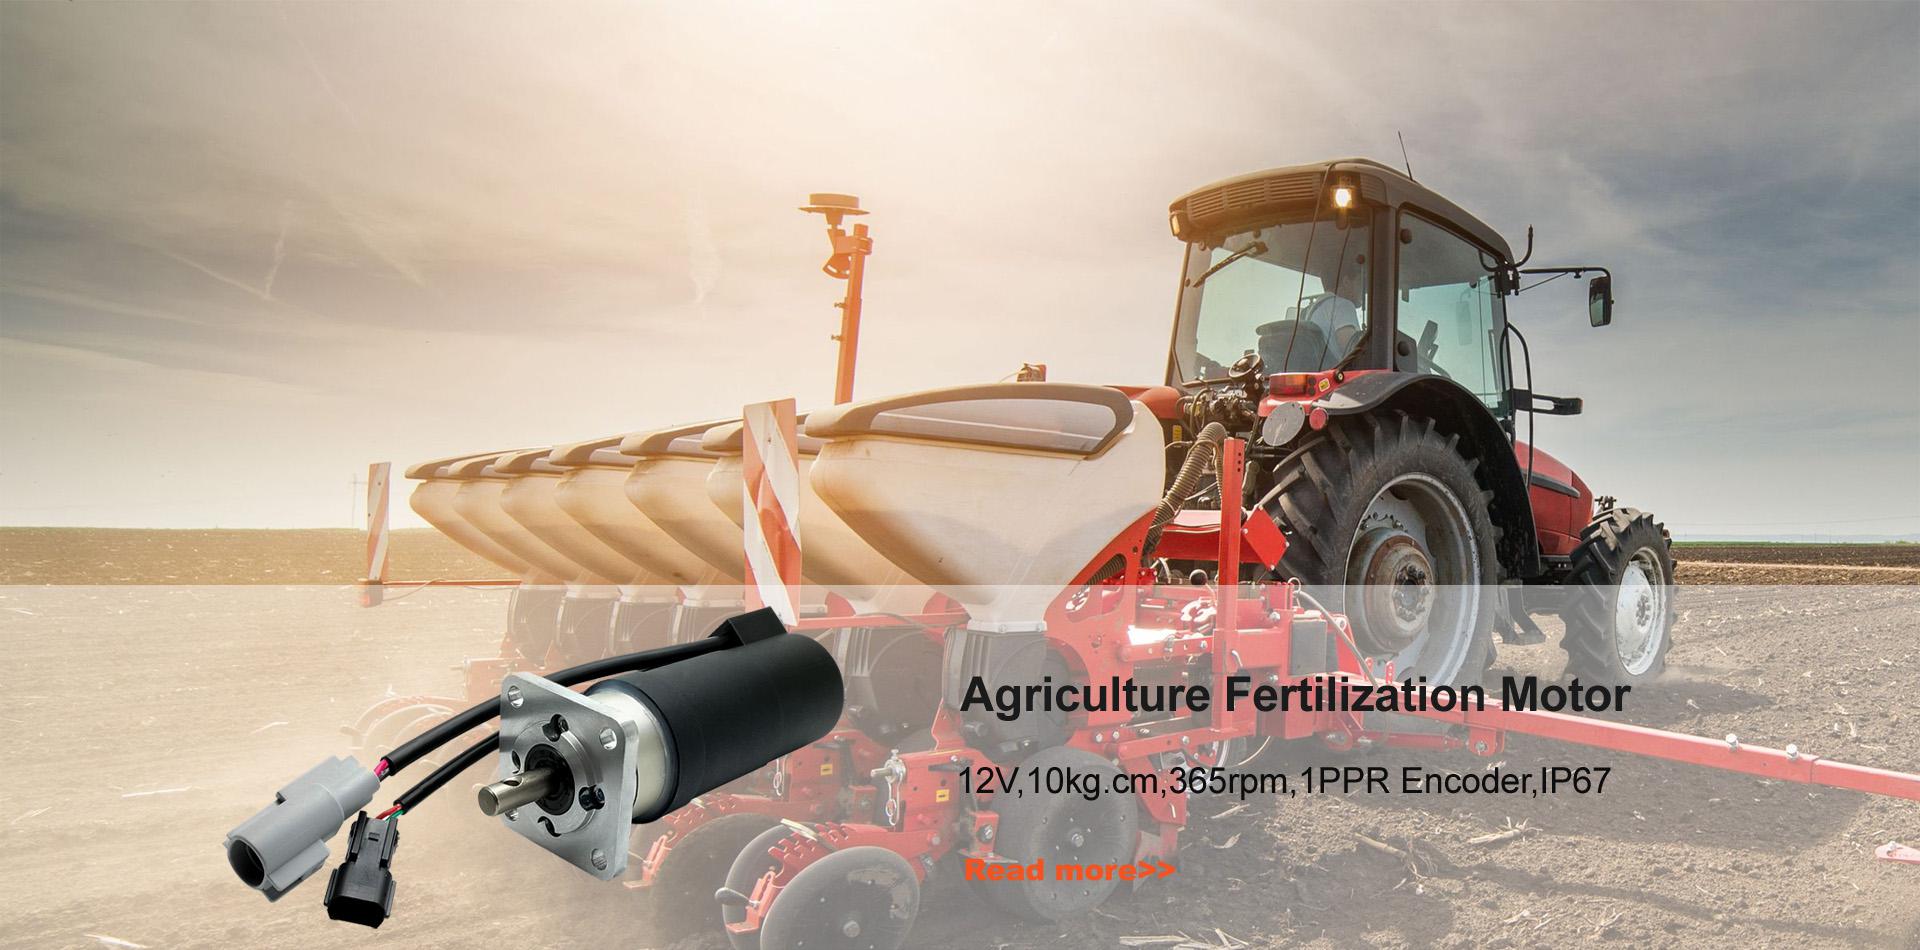 Motore di fertilizzazione dell'agricoltura